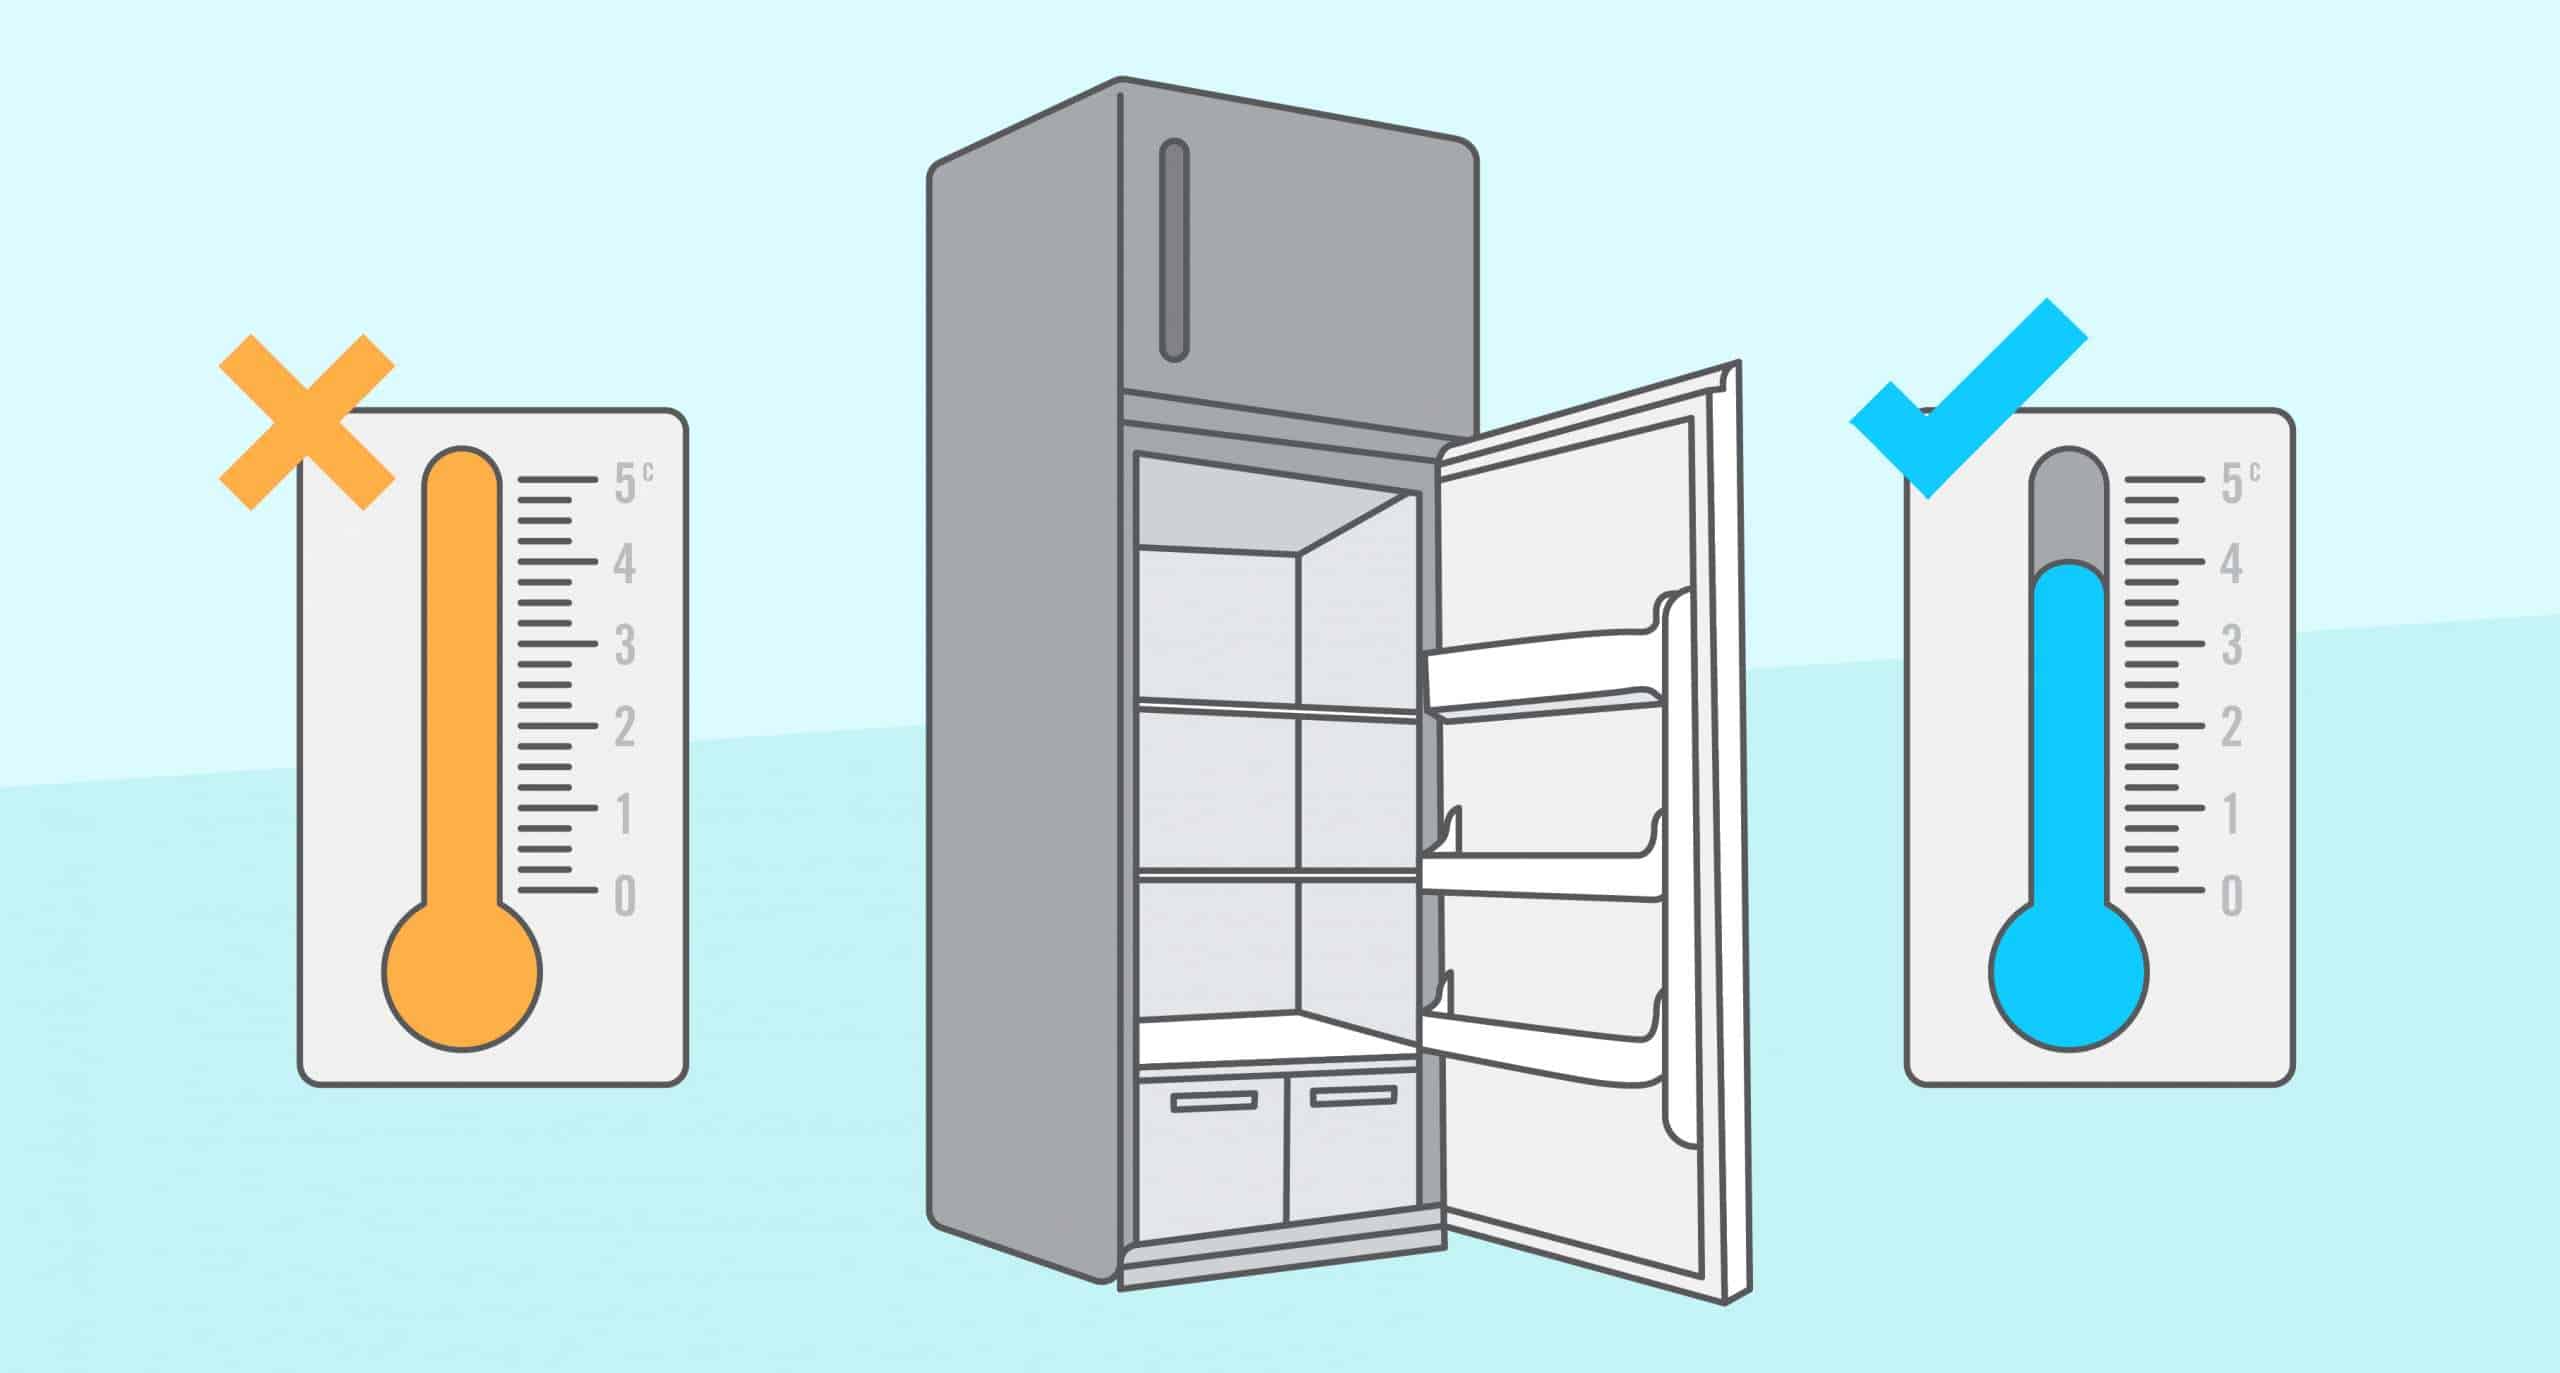 Température frigo : quel réglage pour une température idéale ?